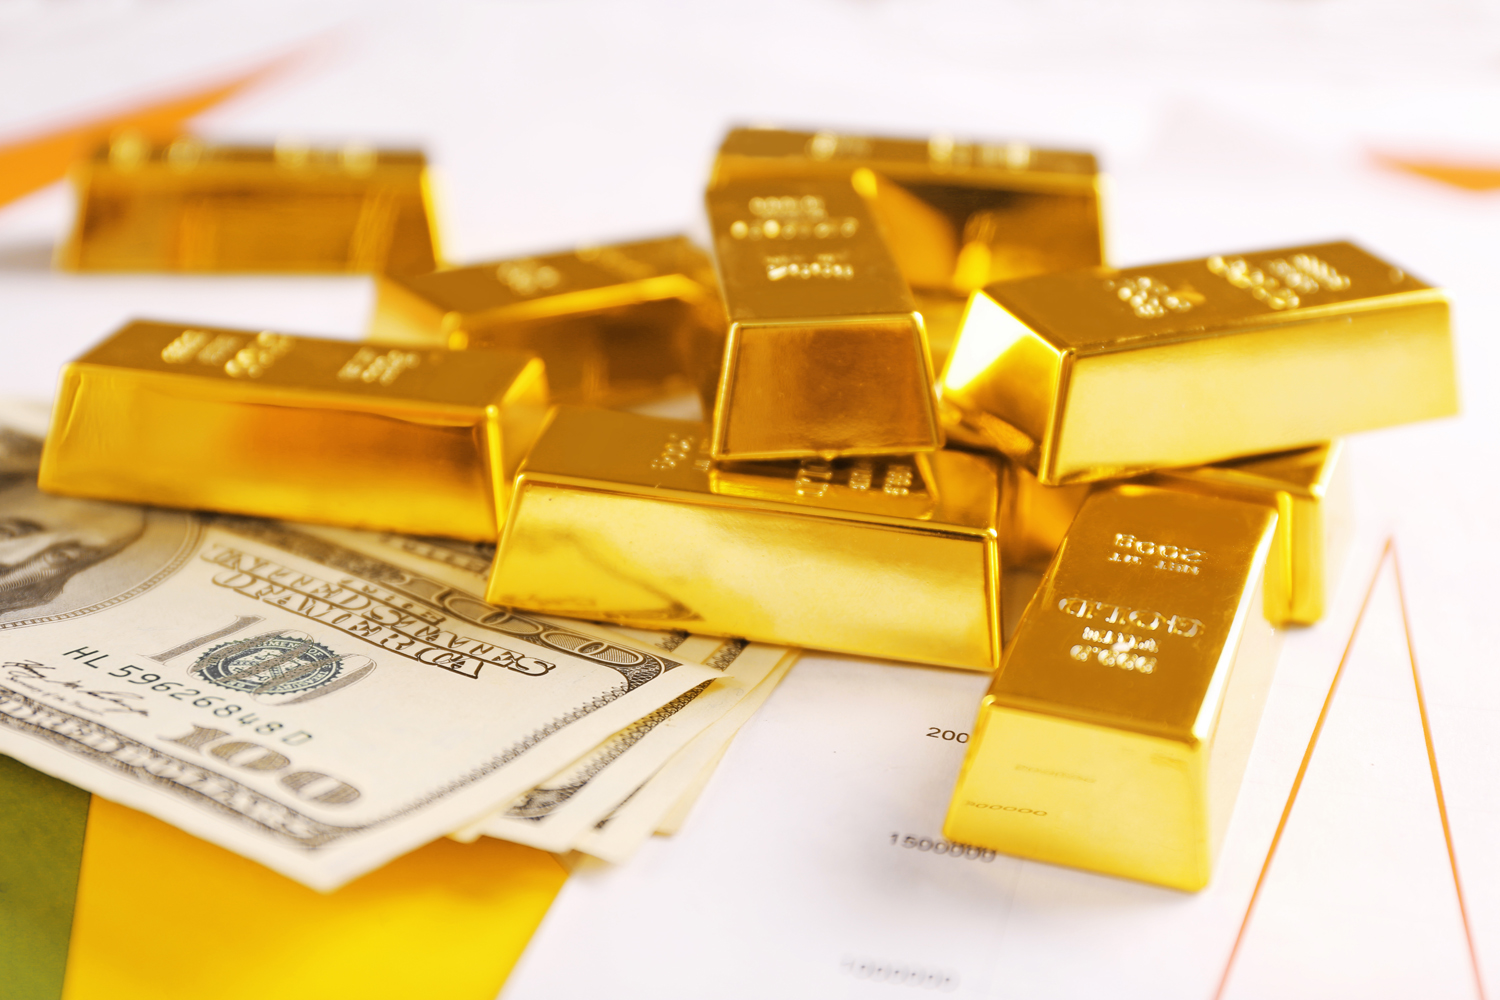  الذهب يرتفع أكثر من 3 في المئة ليبلغ 1933 دولارا للأونصة